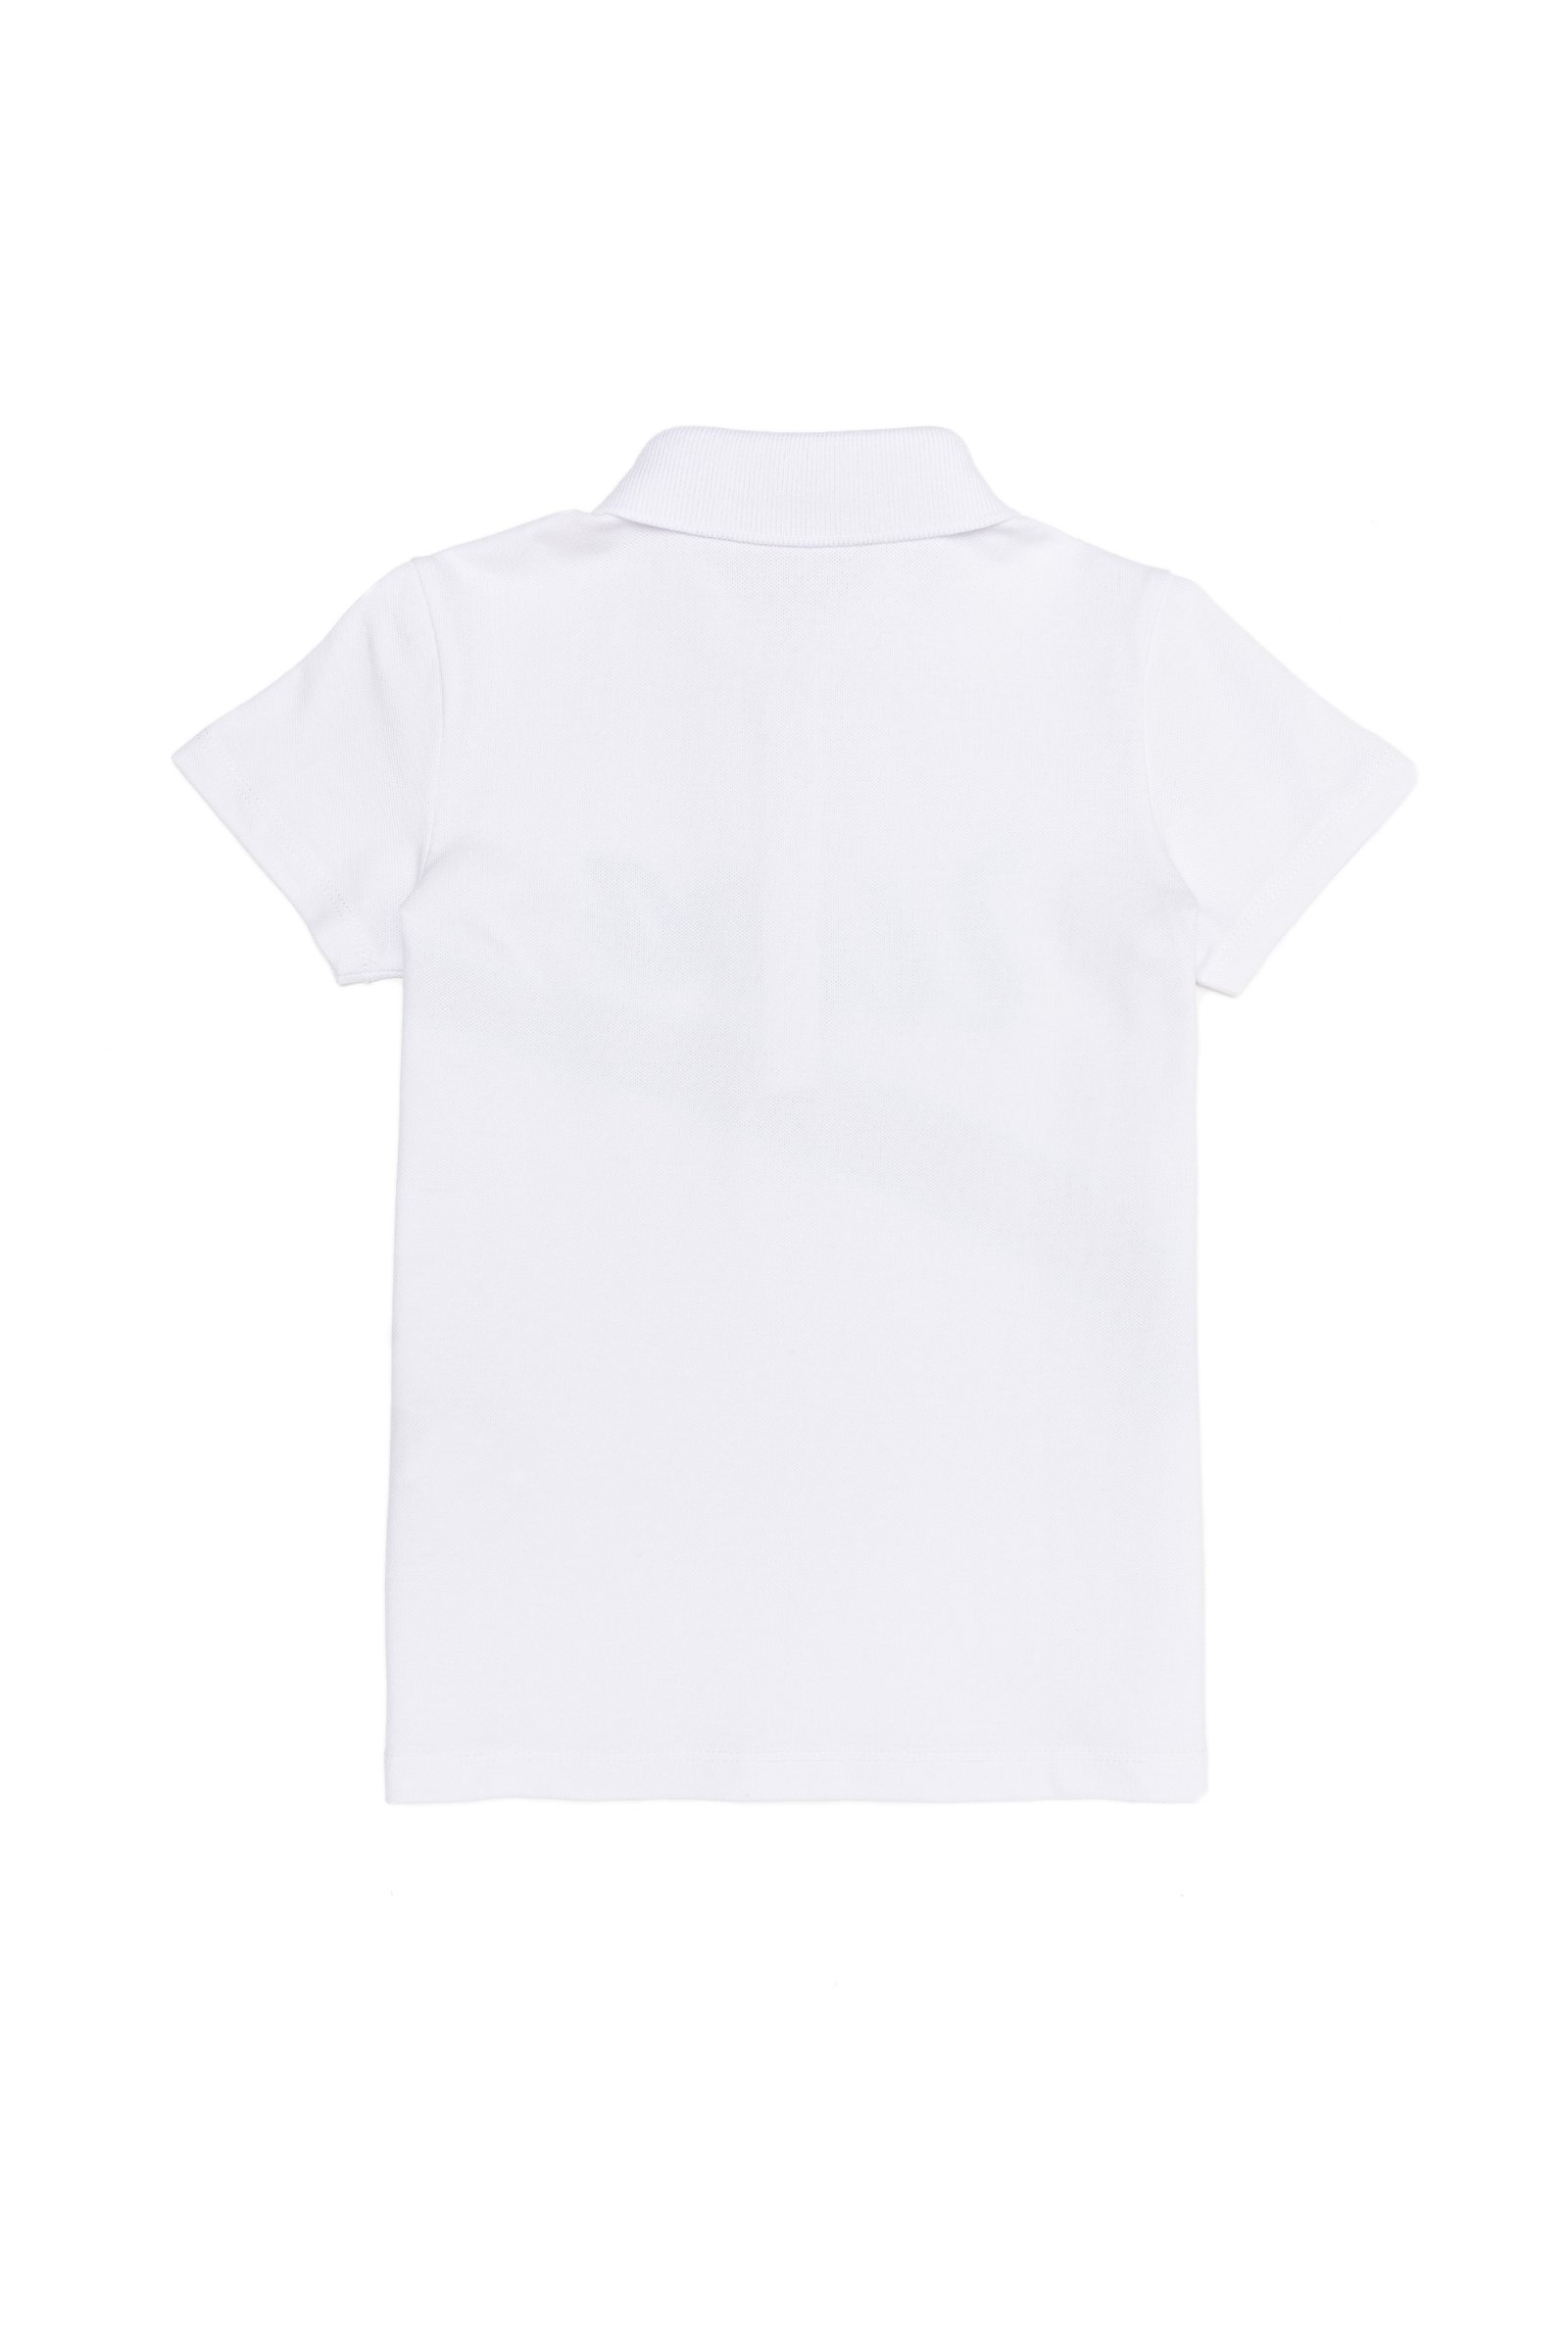 تی شرت یقه پولو سفید  استاندارد فیت  دخترانه یو اس پولو